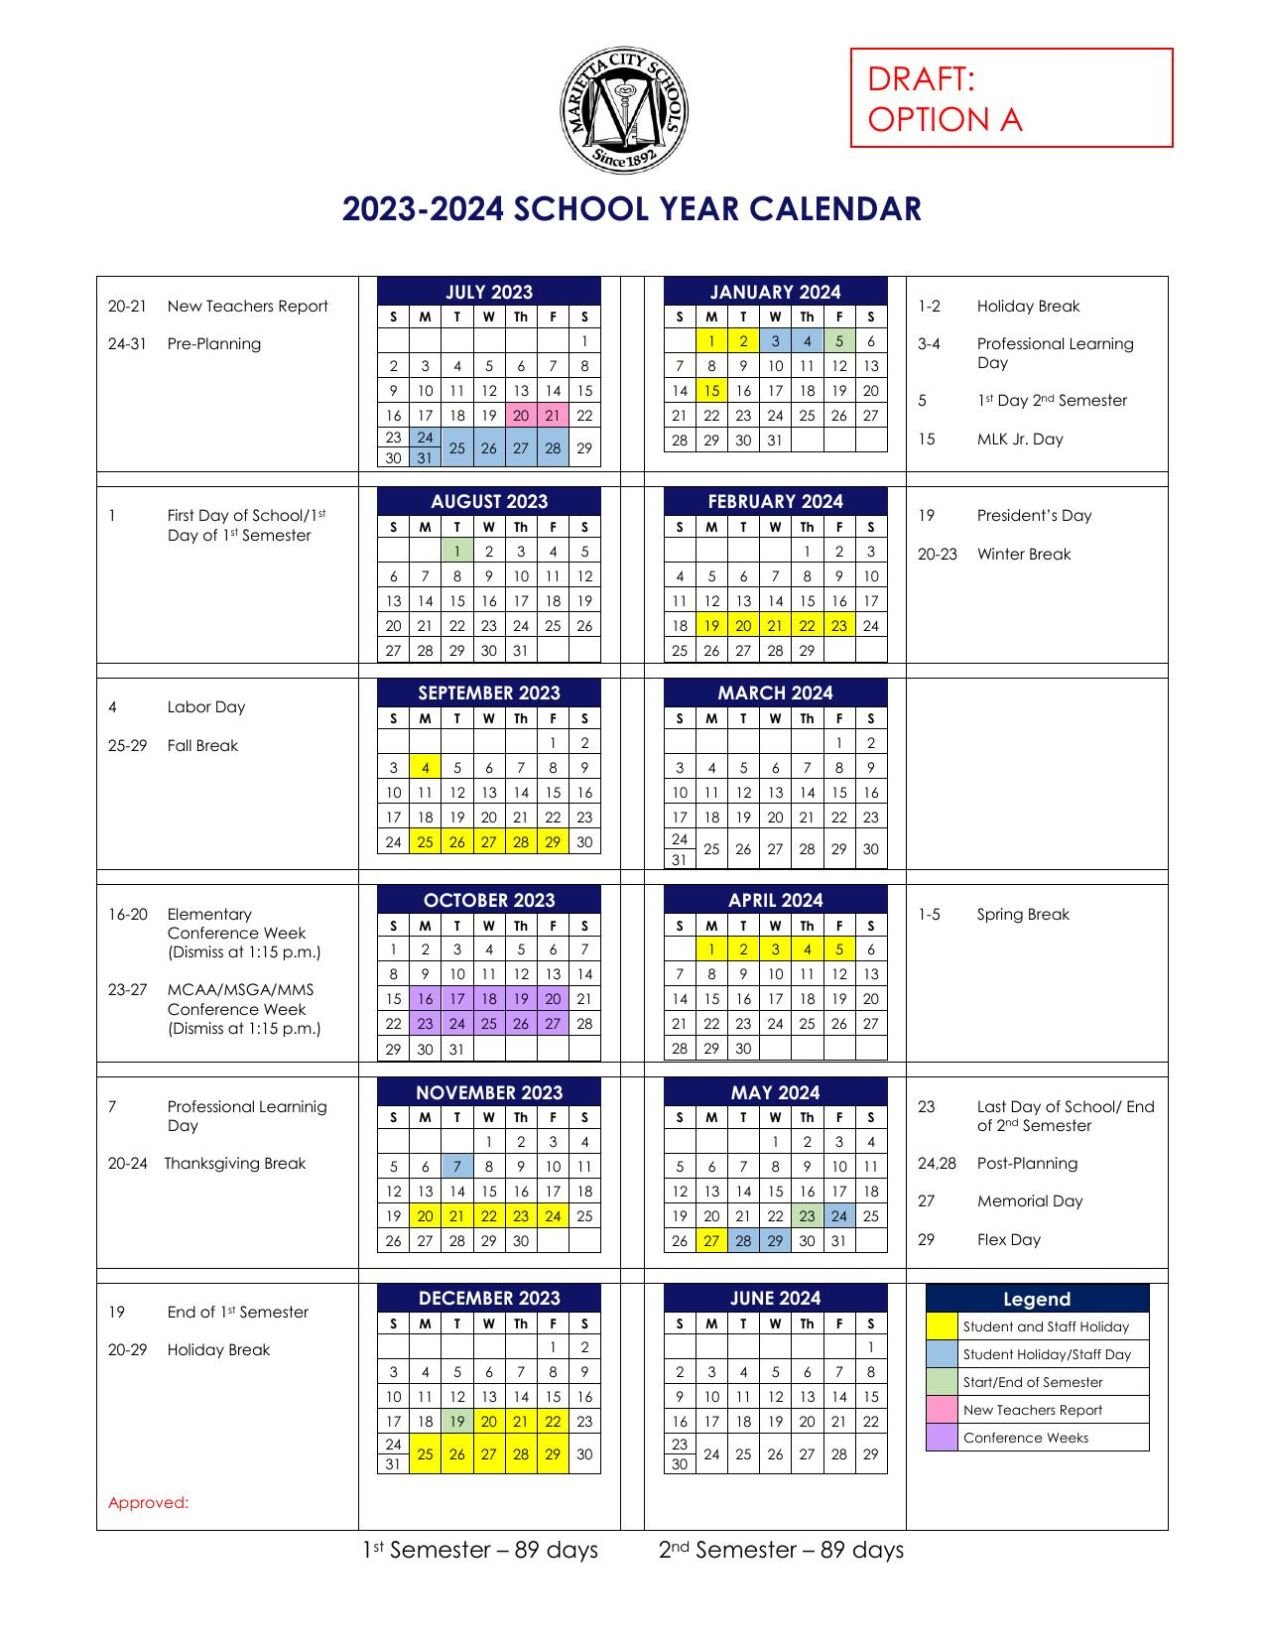 Malta School Calendar 2023 2024 – Get Calendar 2023 Update